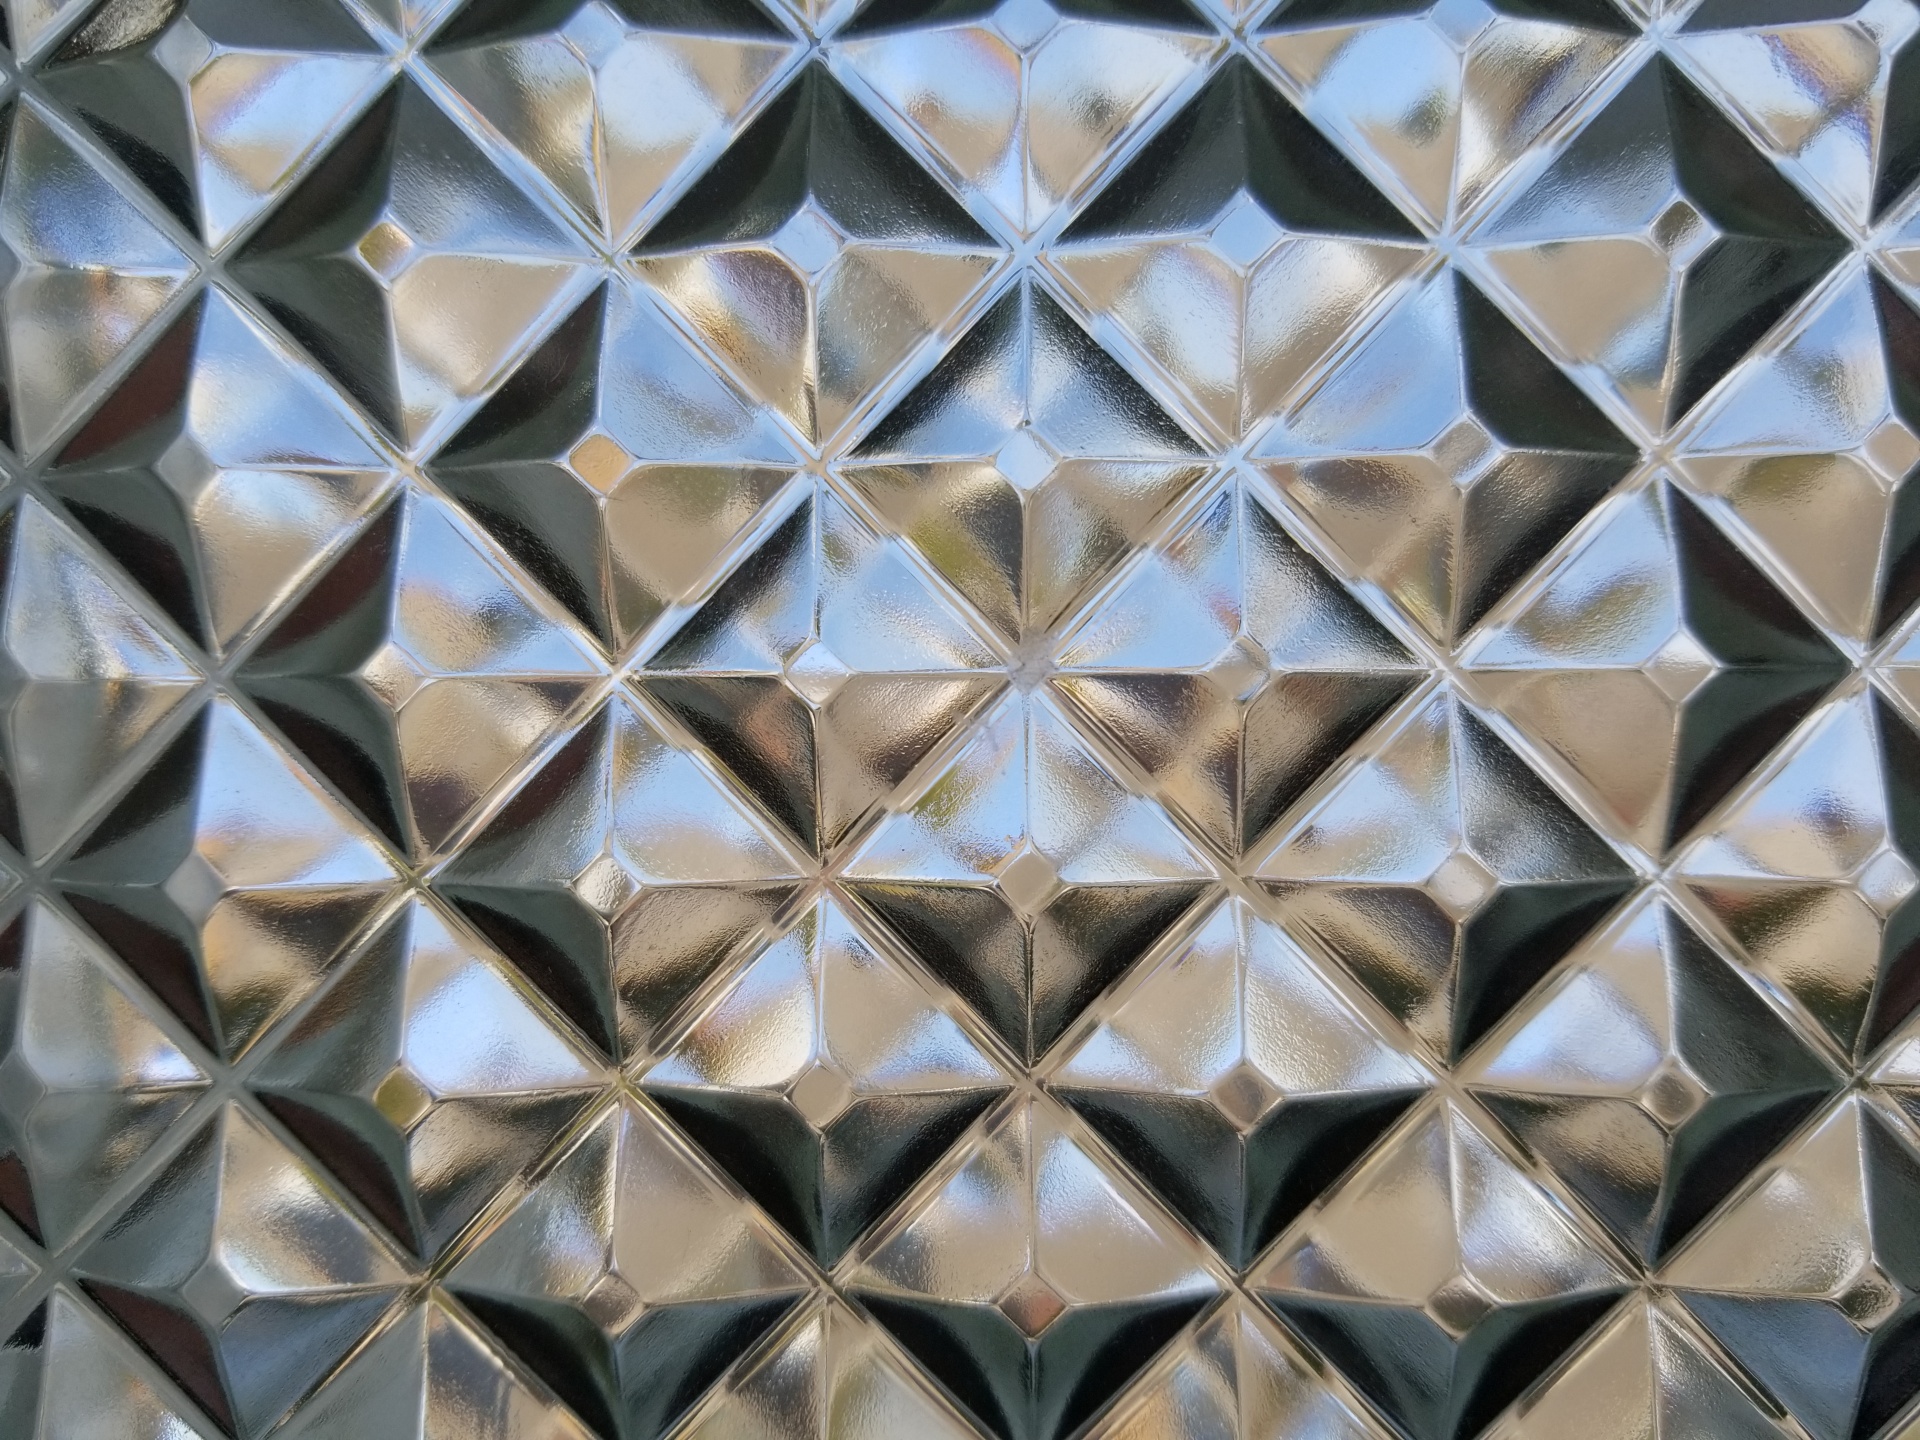 glass wall of diamond shaped glass blocks. Free image.